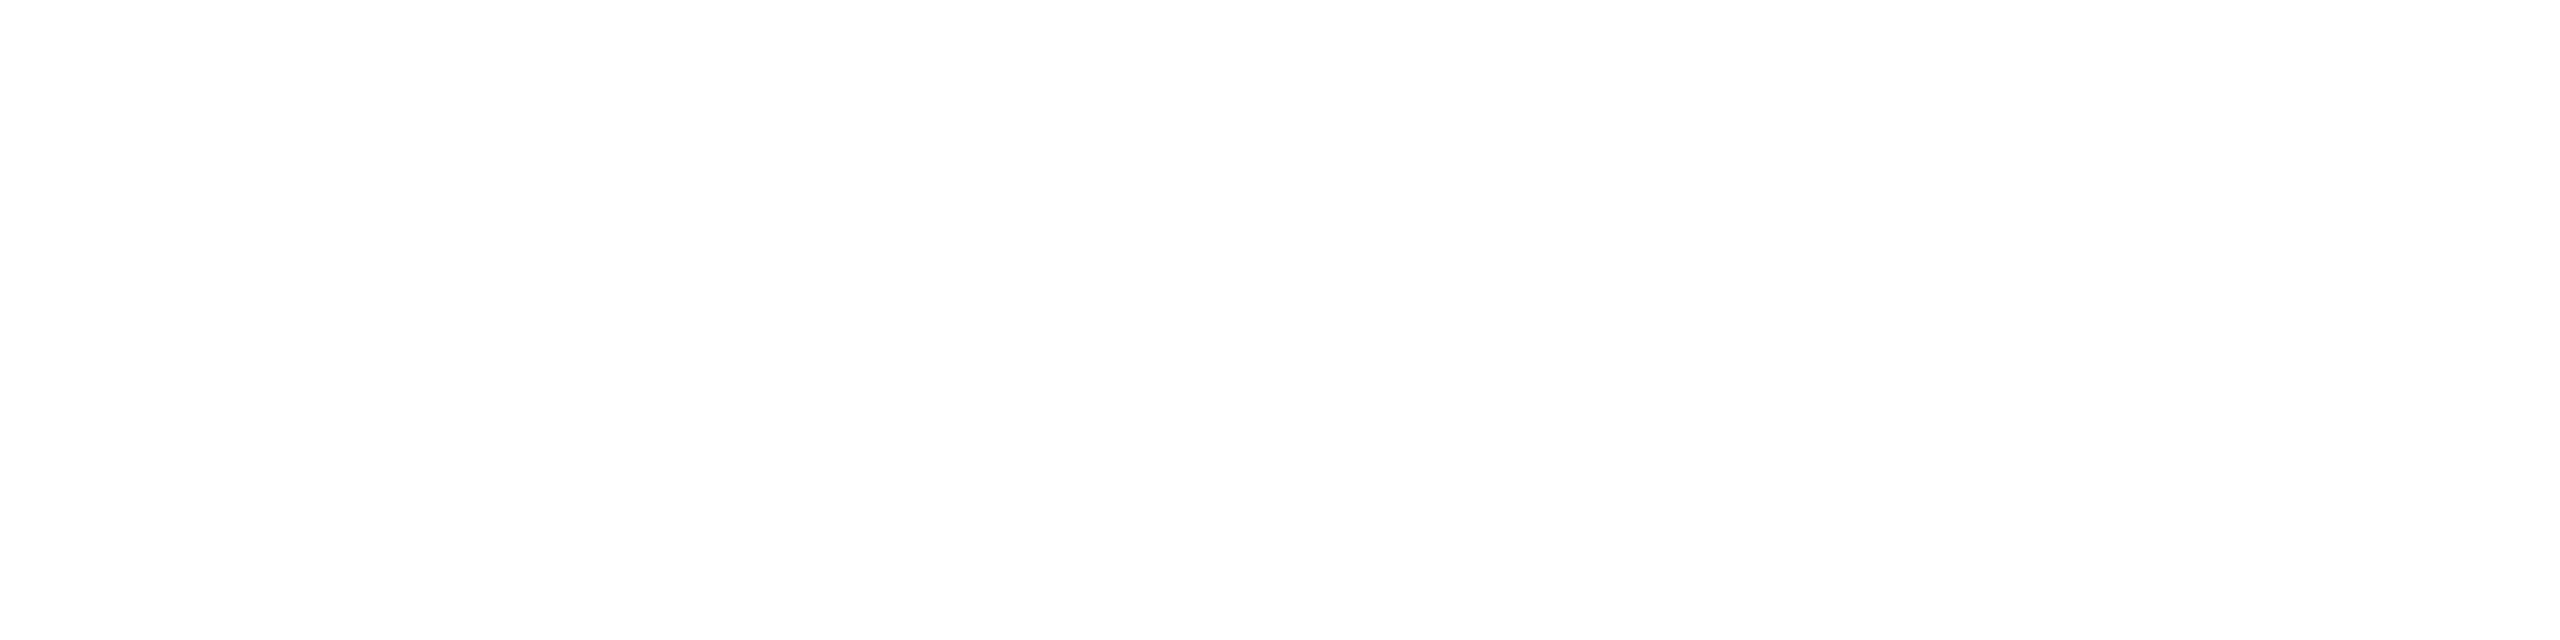 HanseMerkur_logo